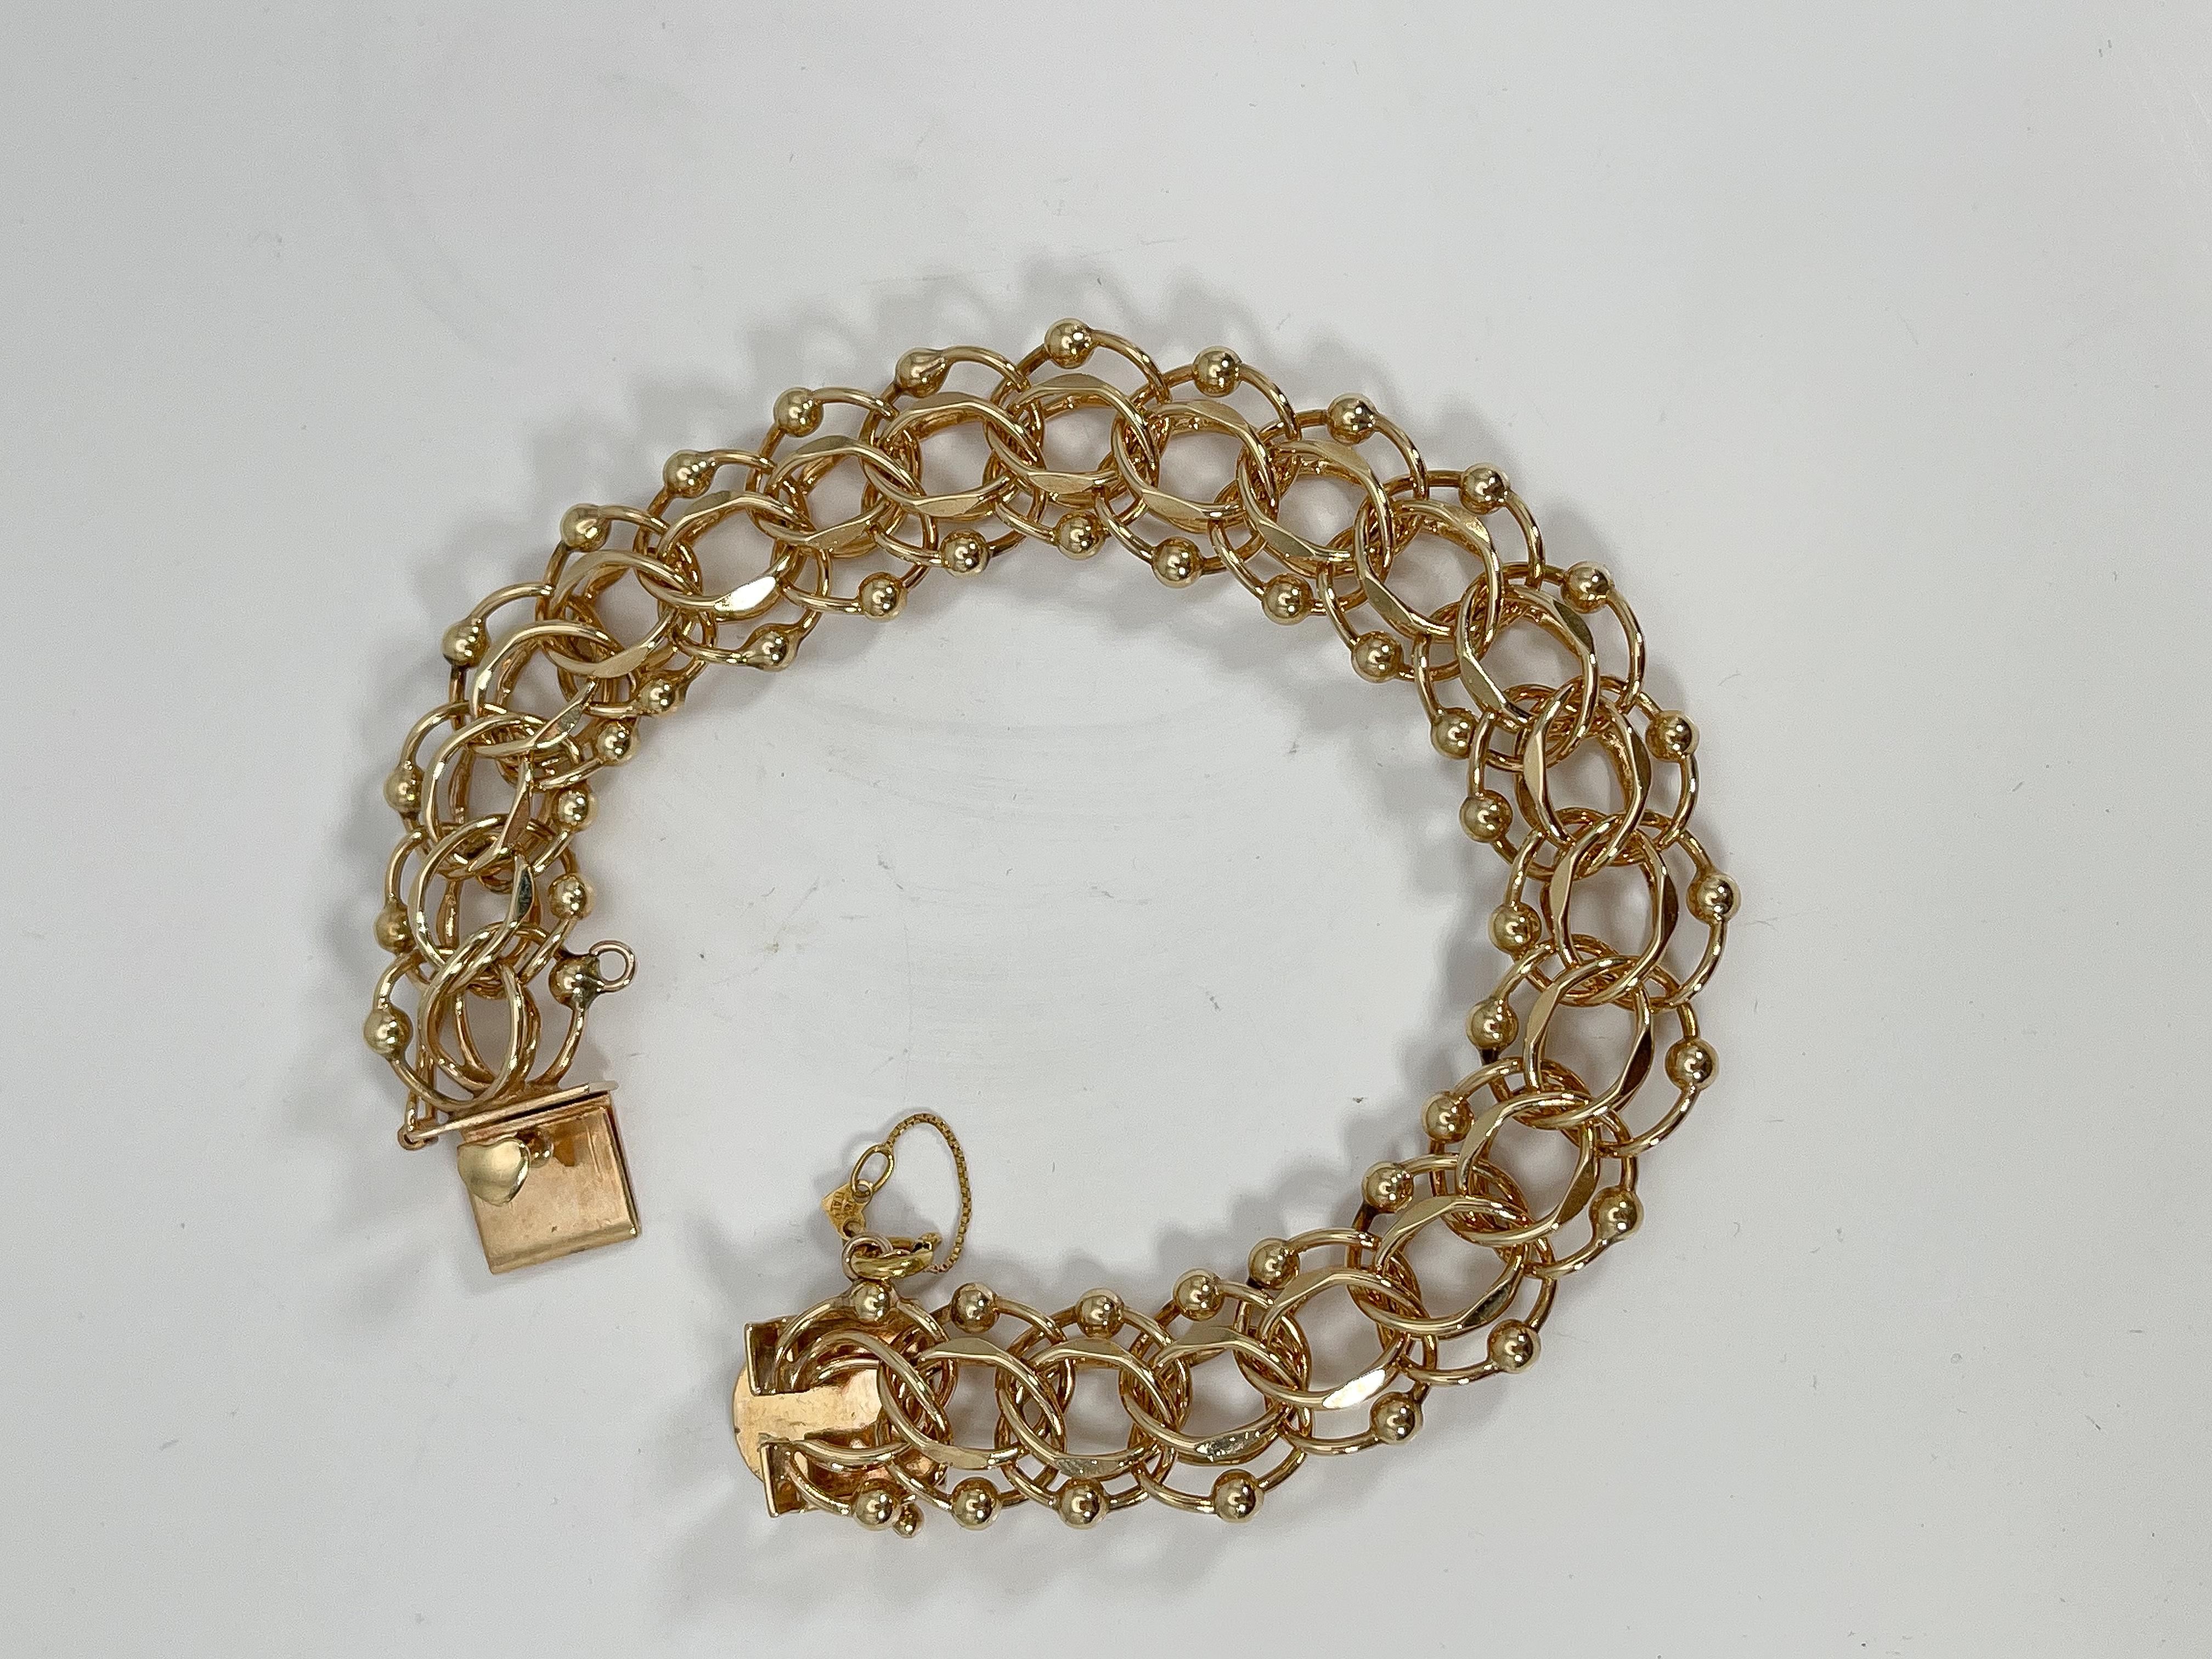 Bracelet à breloques en or jaune 14k. Ce bracelet est doté d'un fermoir en forme de 8 qui s'ouvre et se ferme et d'une chaîne de sécurité. La largeur est de 14,5 mm, la longueur de 7,5 pouces et le poids total de 30,08 grammes.